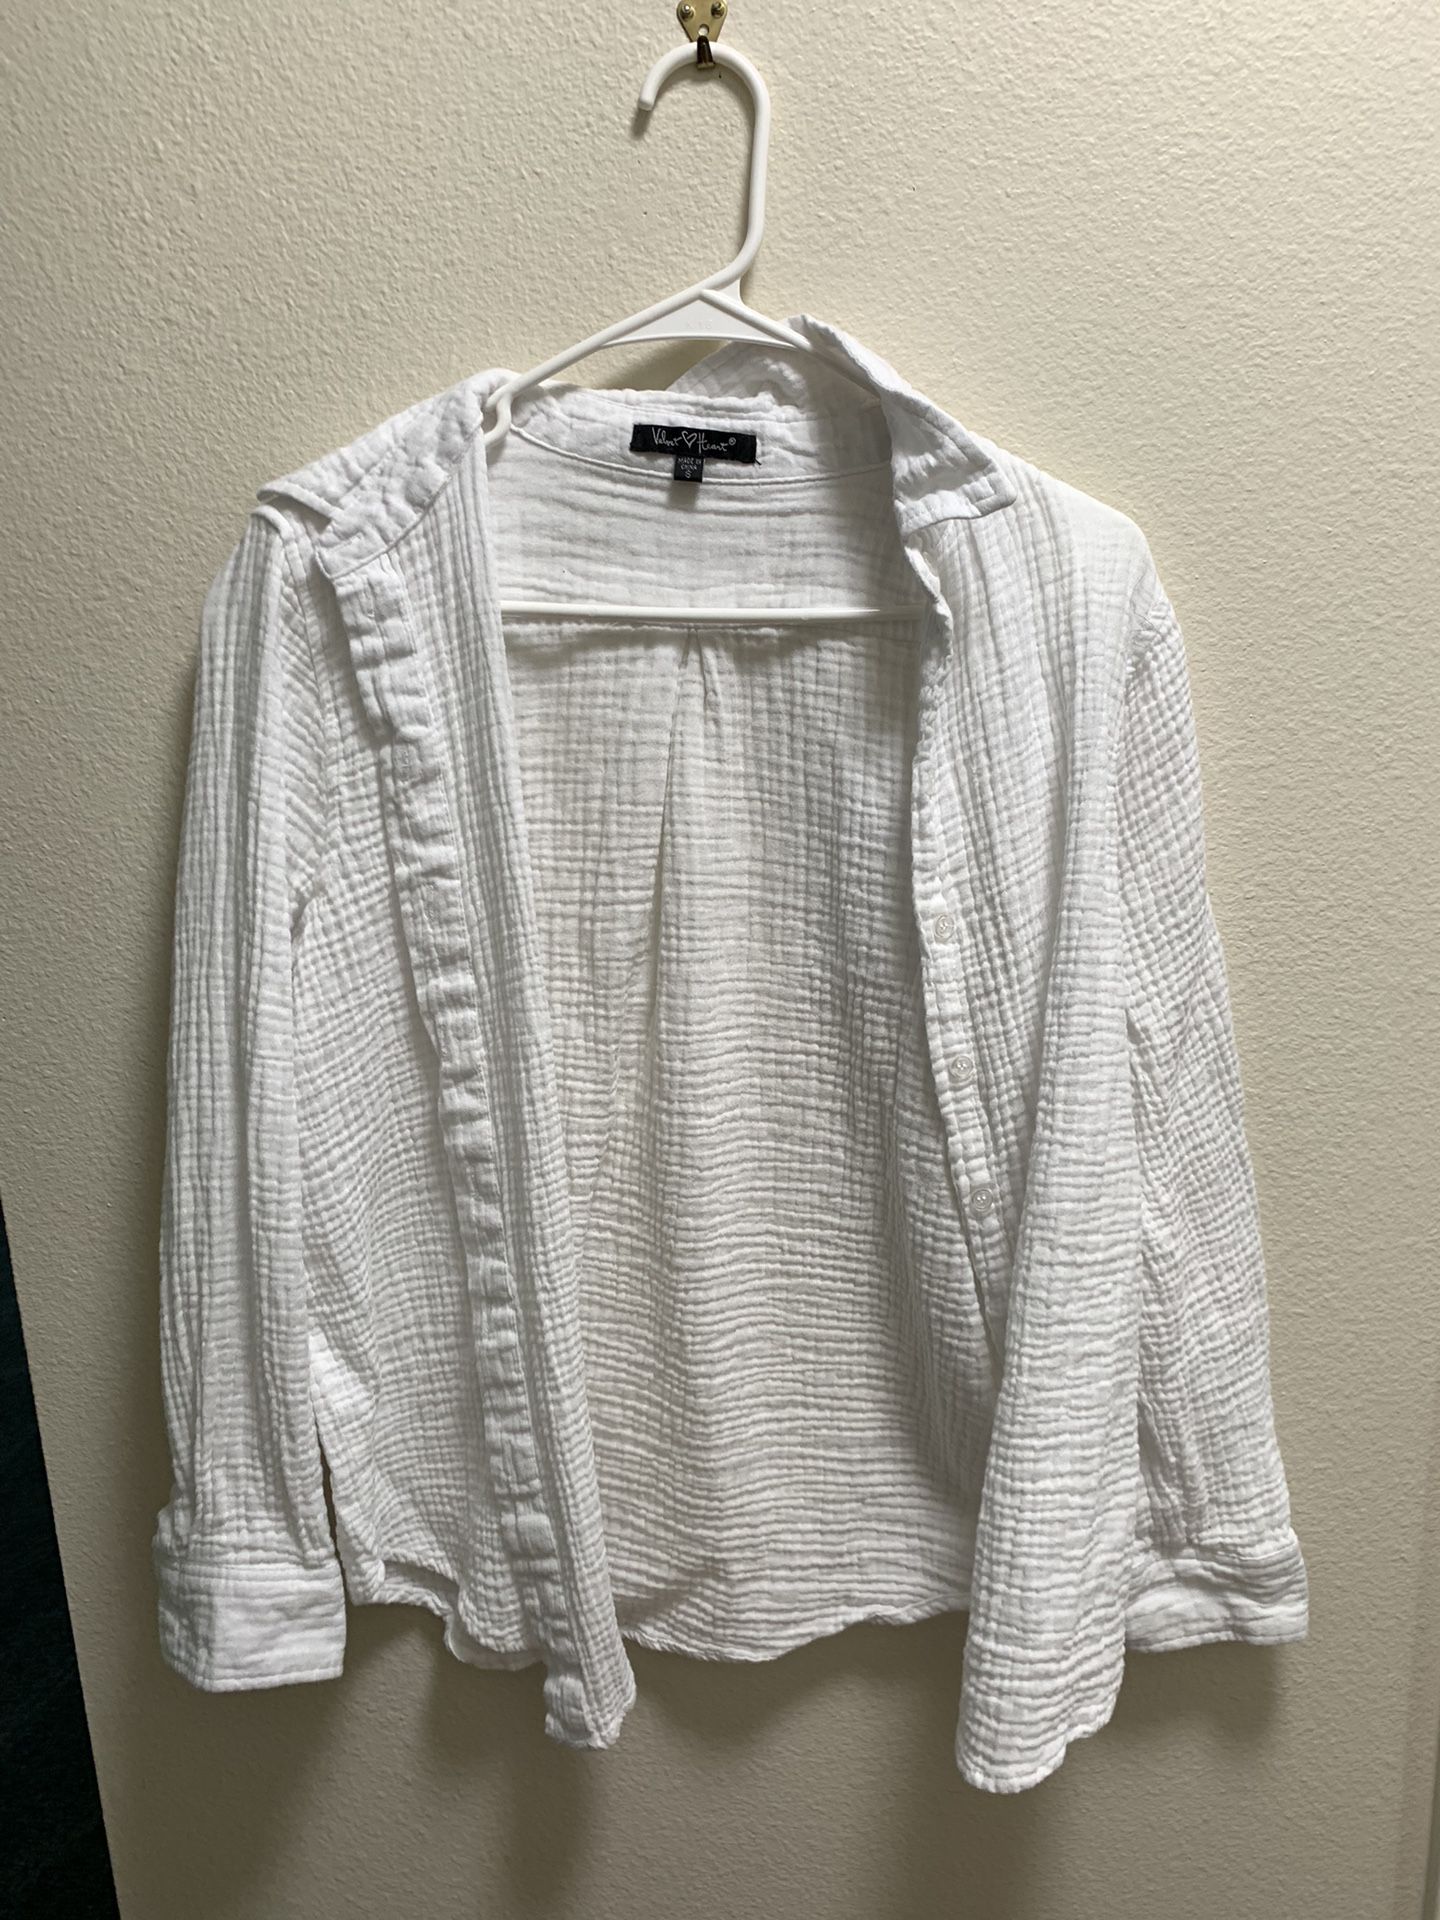 Velvet Heart Soft White Blouse Cardigan/jacket